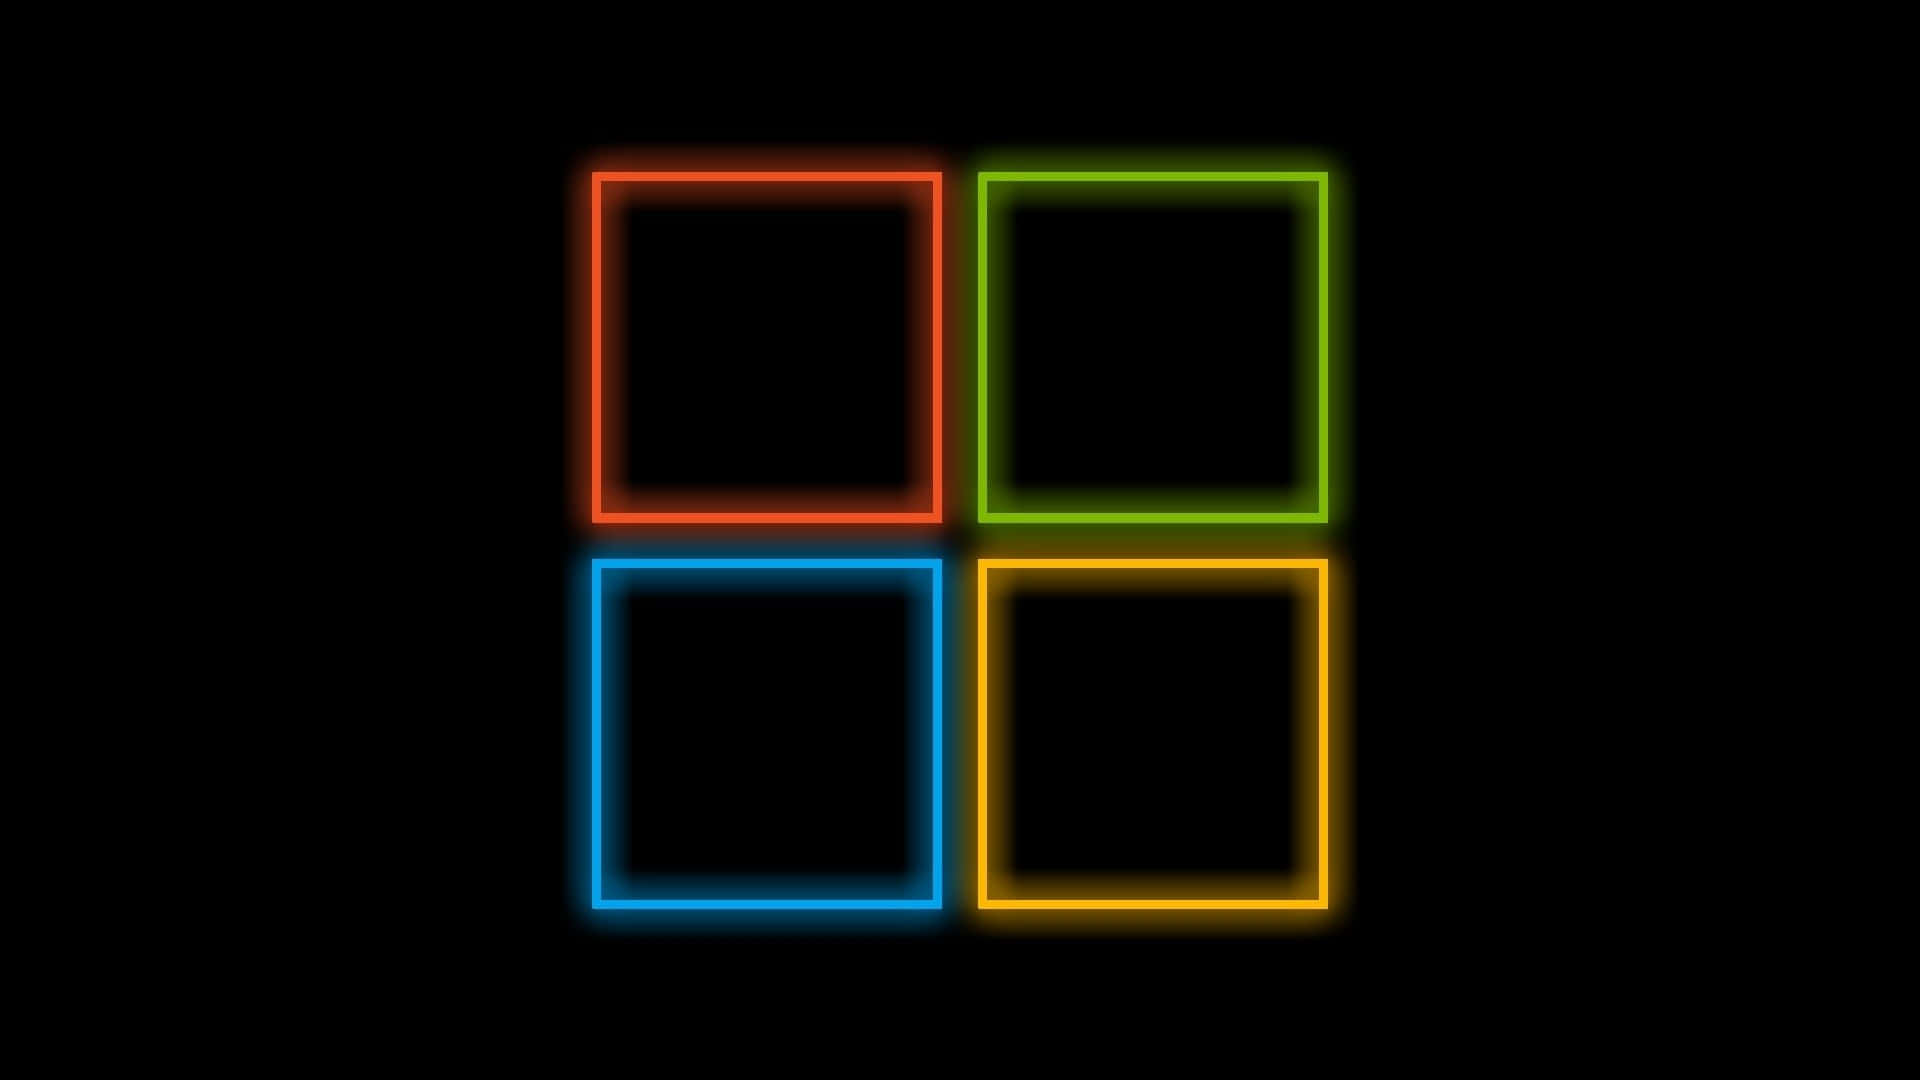 Logotipode Microsoft Windows 10 En Colores Neón